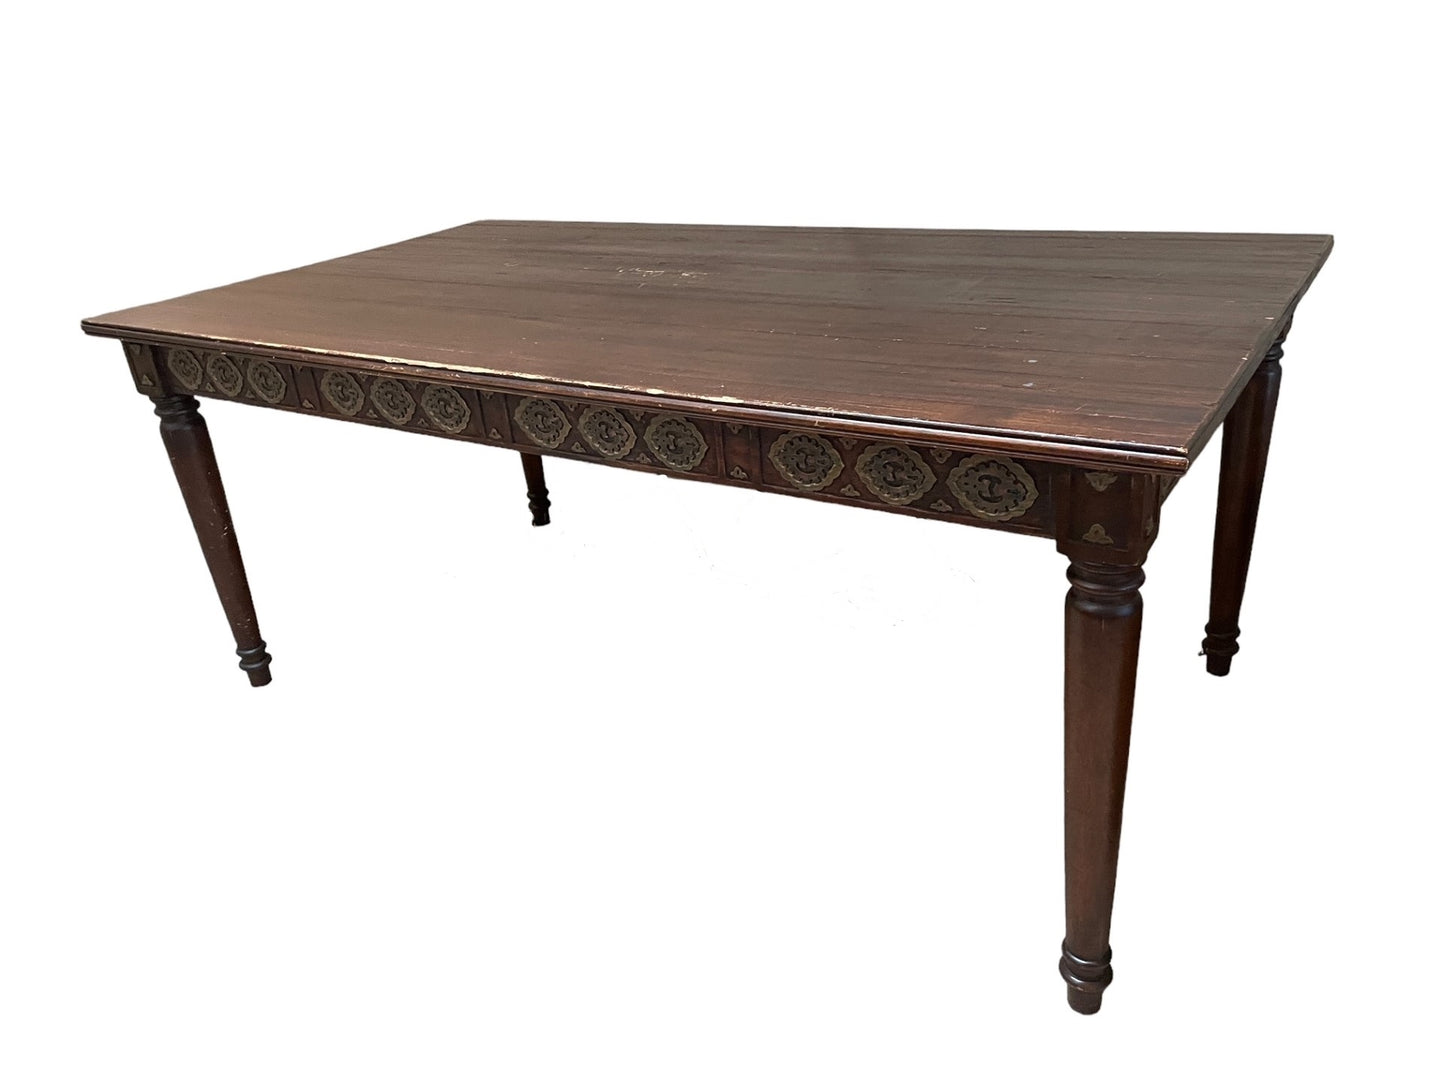 Vintage Carved Wood Dining Table Desk LG223-19